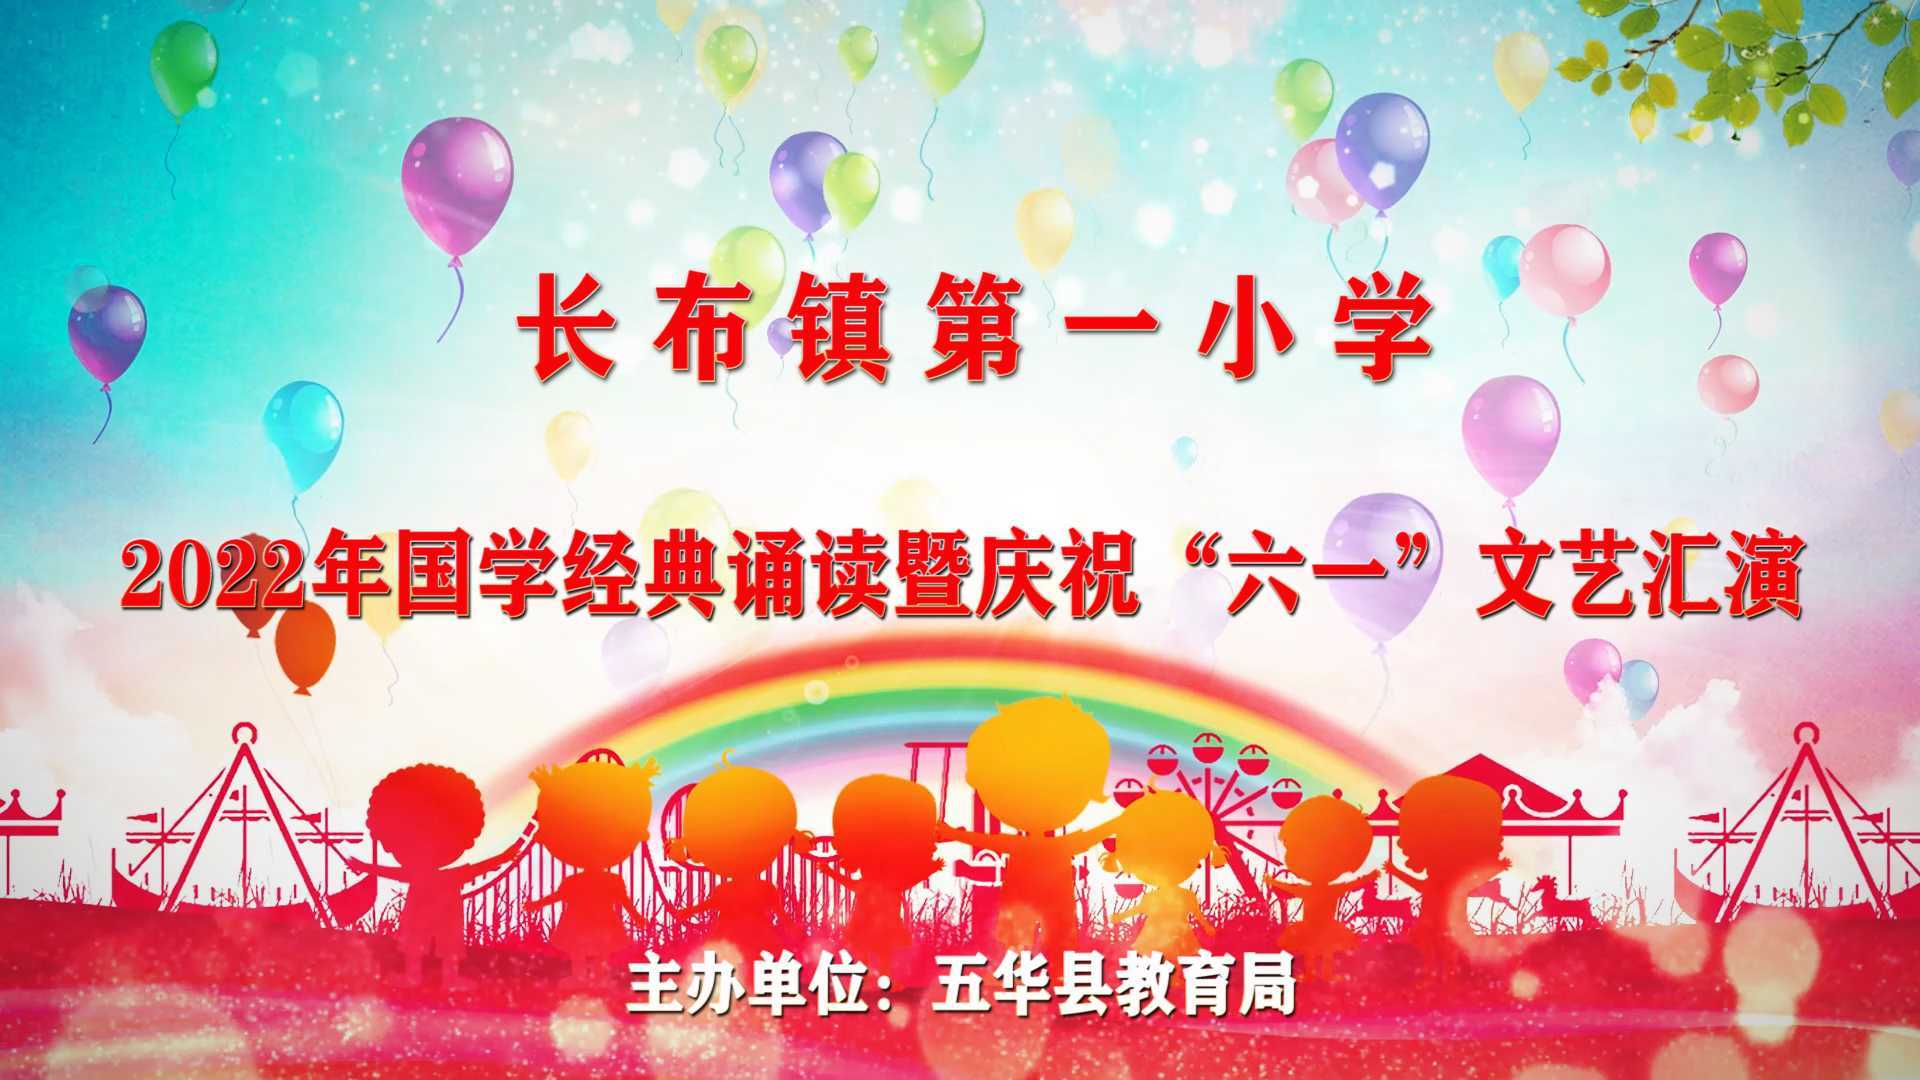 长布镇第一小学2022年国学经典诵读暨庆祝“六一“文艺汇演